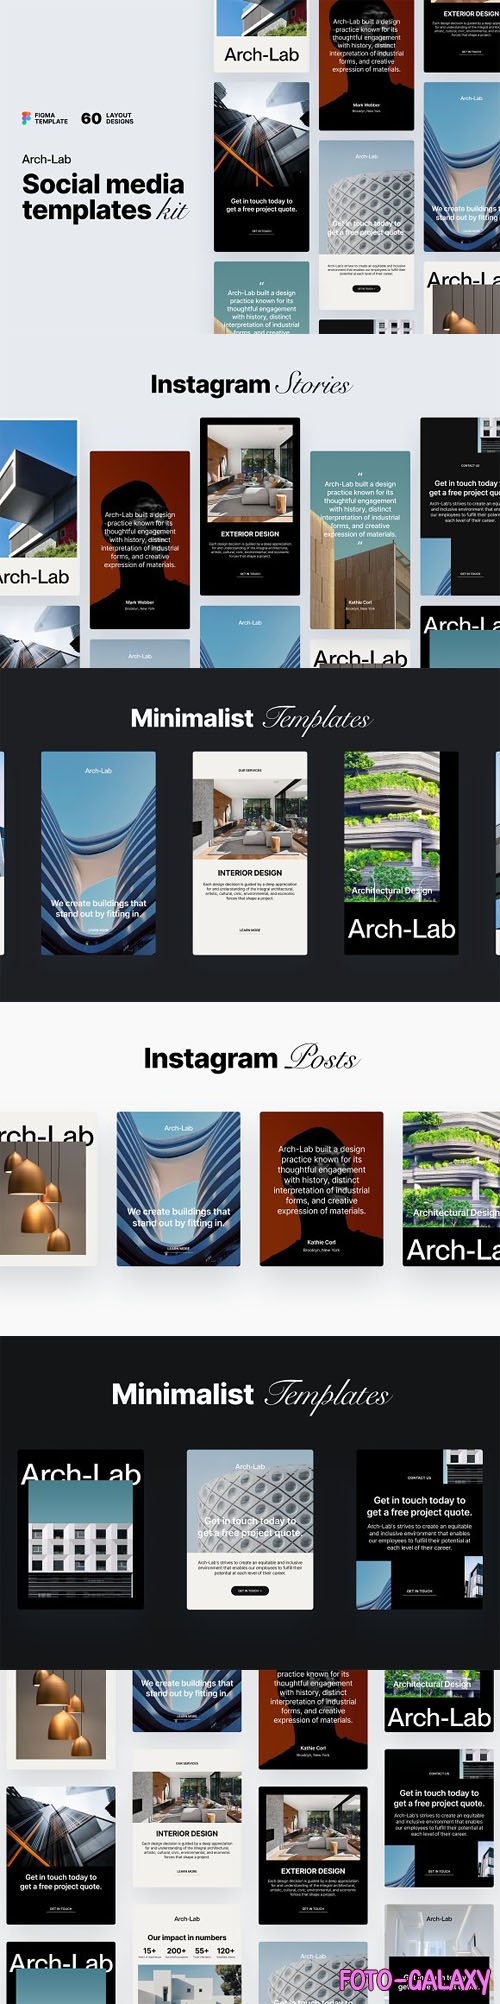 Arch-Lab Social Media Templates Kit v1.1 for Figma